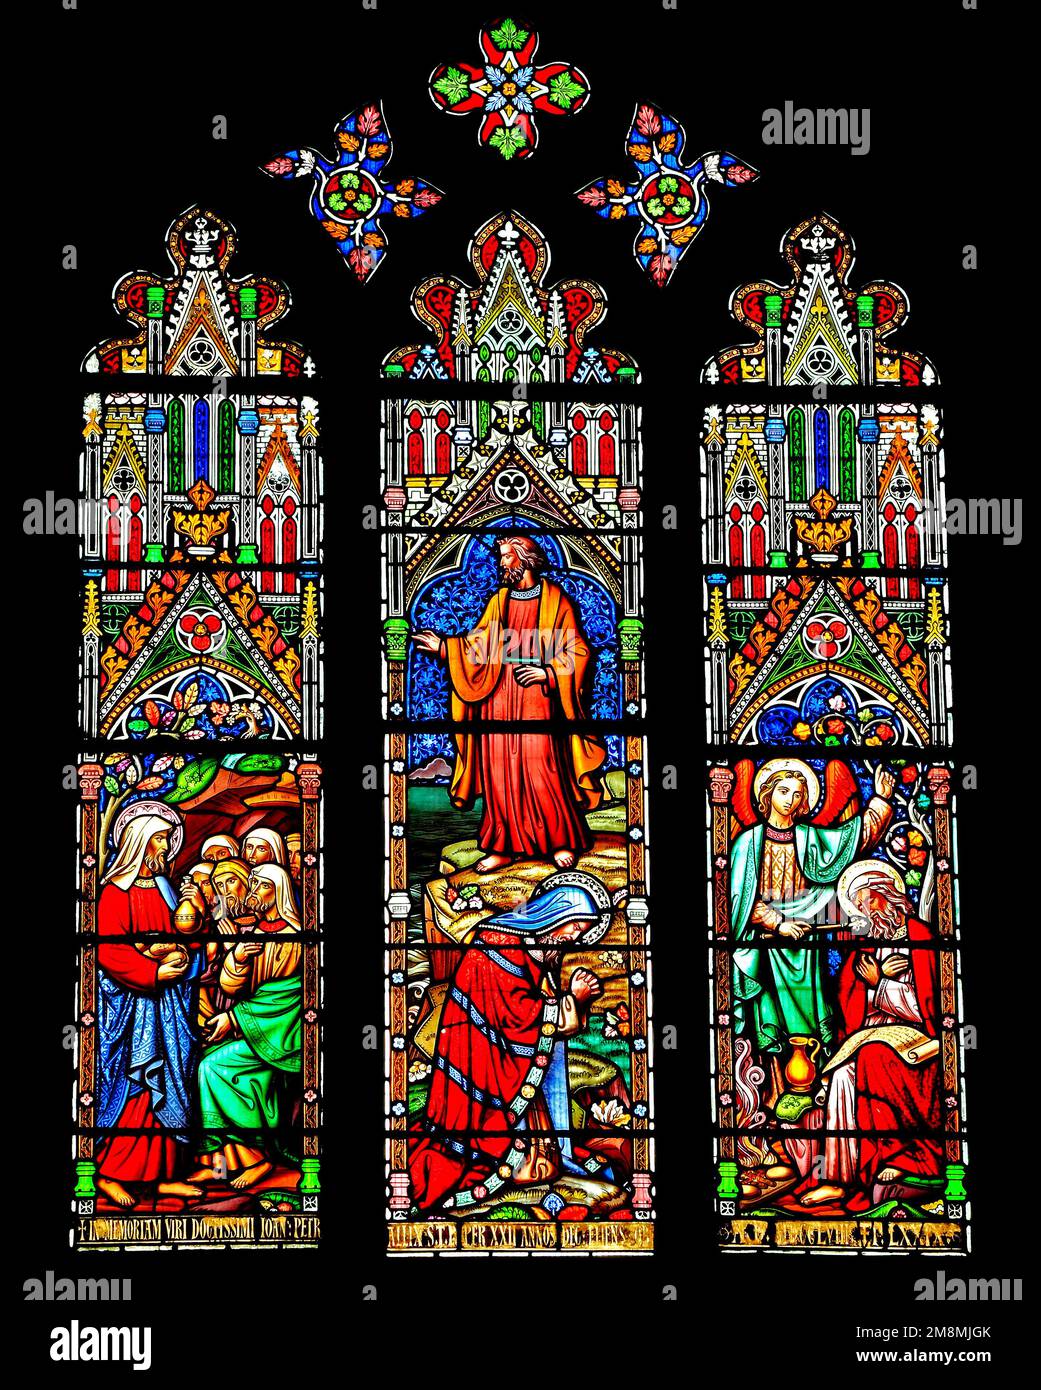 Buntglasfenster, Obadiah bringt Brot, Elijah mit Diener und Elijah mit Engel, von William Wailes, Mitte des 19. Jahrhunderts, Ely Cathedral Stockfoto